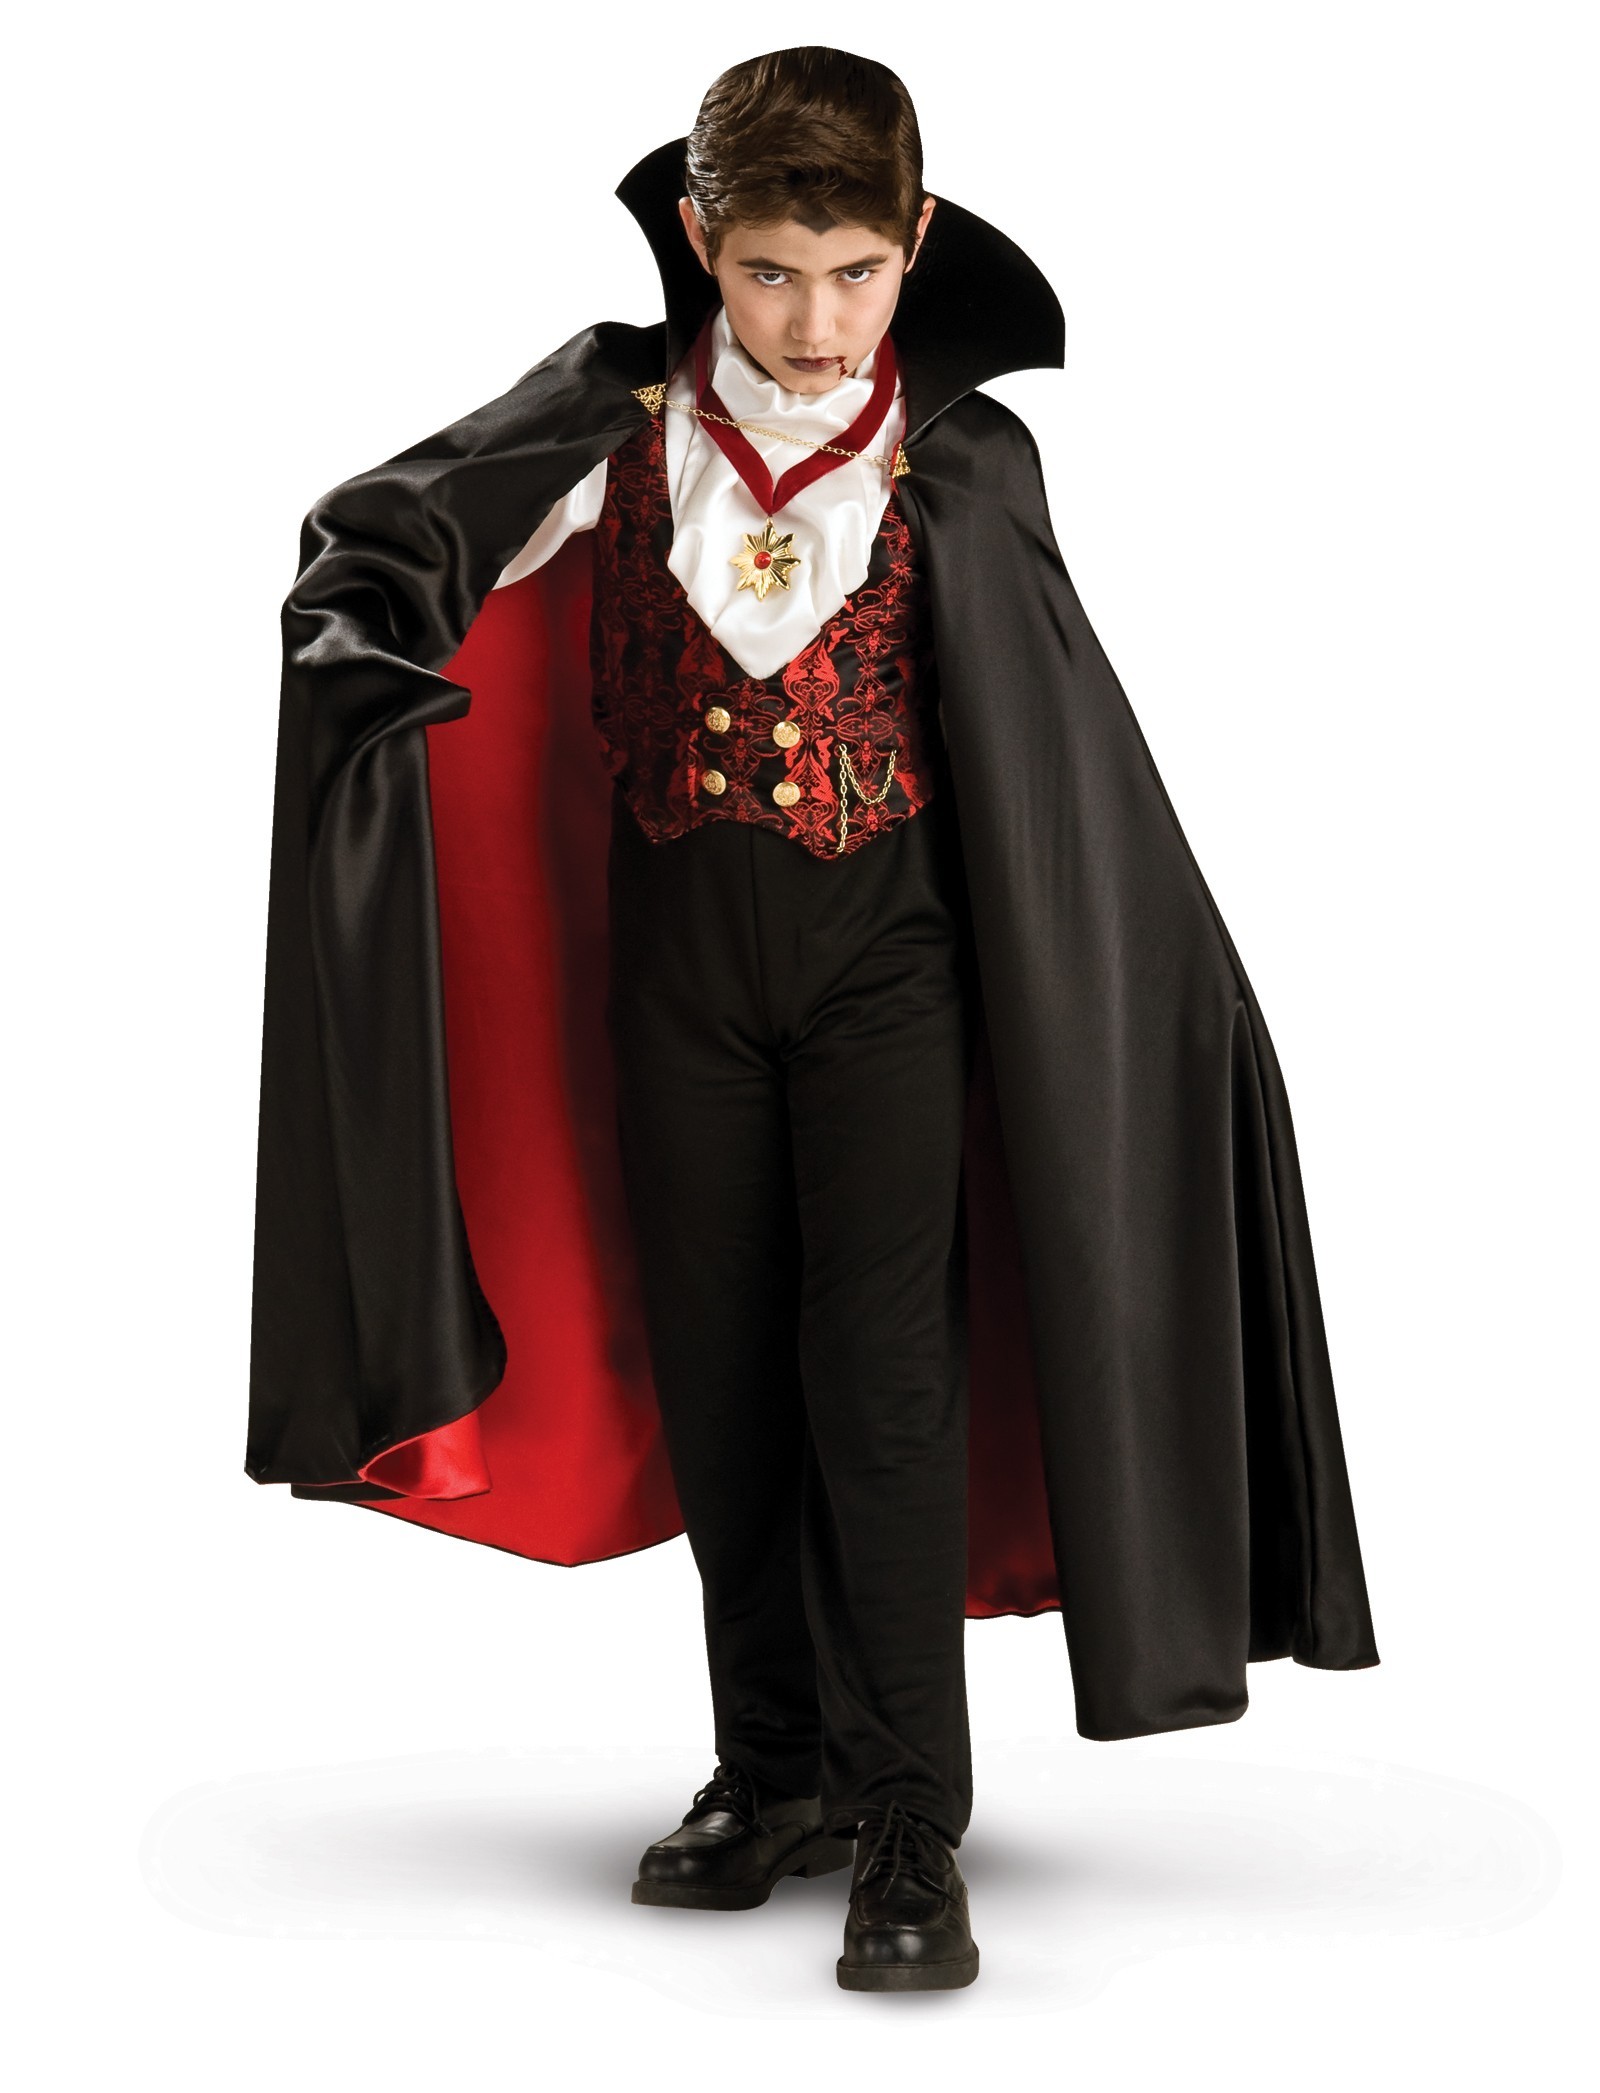 Barry Persona responsable Renunciar Disfraz de vampiro para Halloween | Disfraces para niños